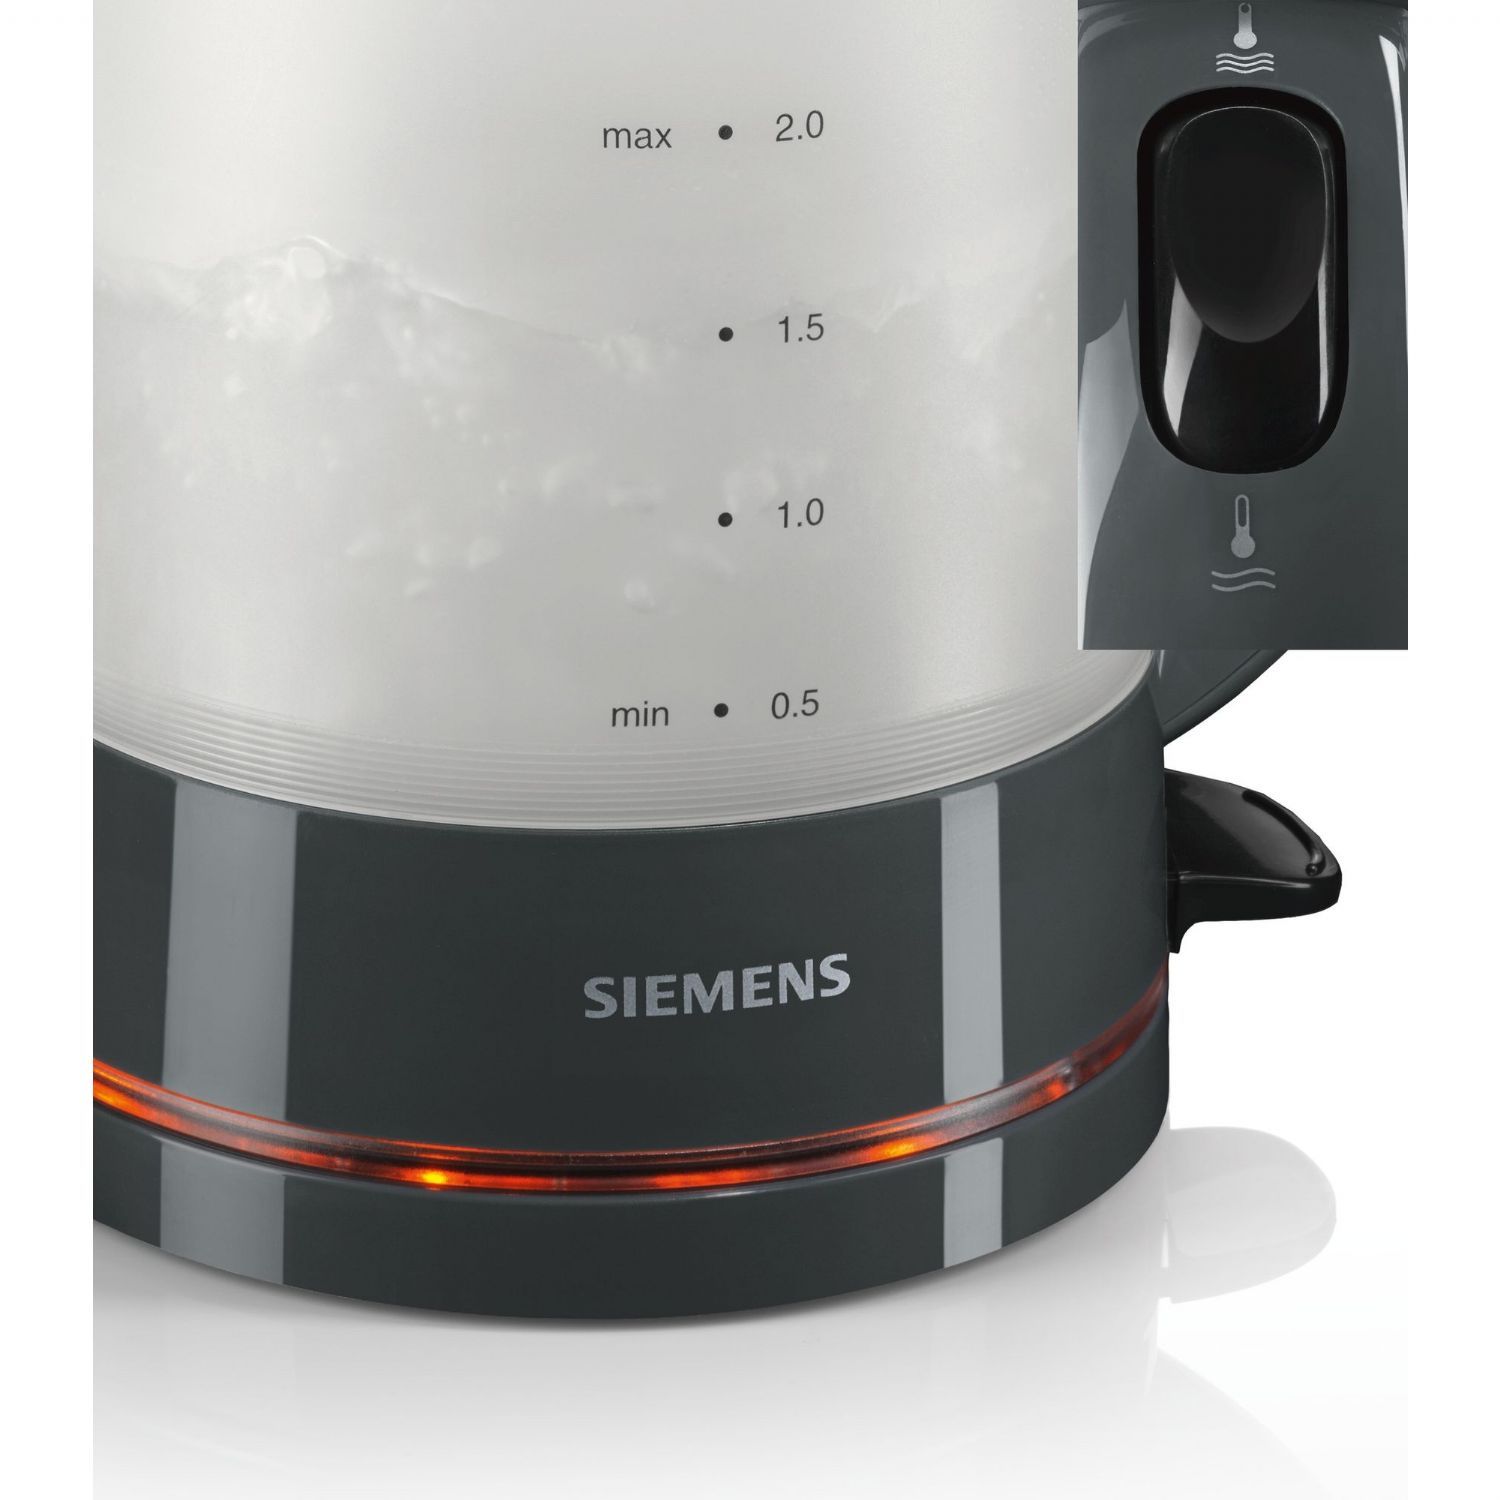 Çay Makineleri | Siemens TA22005 Çay Makinesi | TA22005 | TA22005,Siemens TA22005 Çay Makinesi, Siemens TA22005 Çay Makinesi, Siemens Çay Makinesi, Siemens TA22005 | 